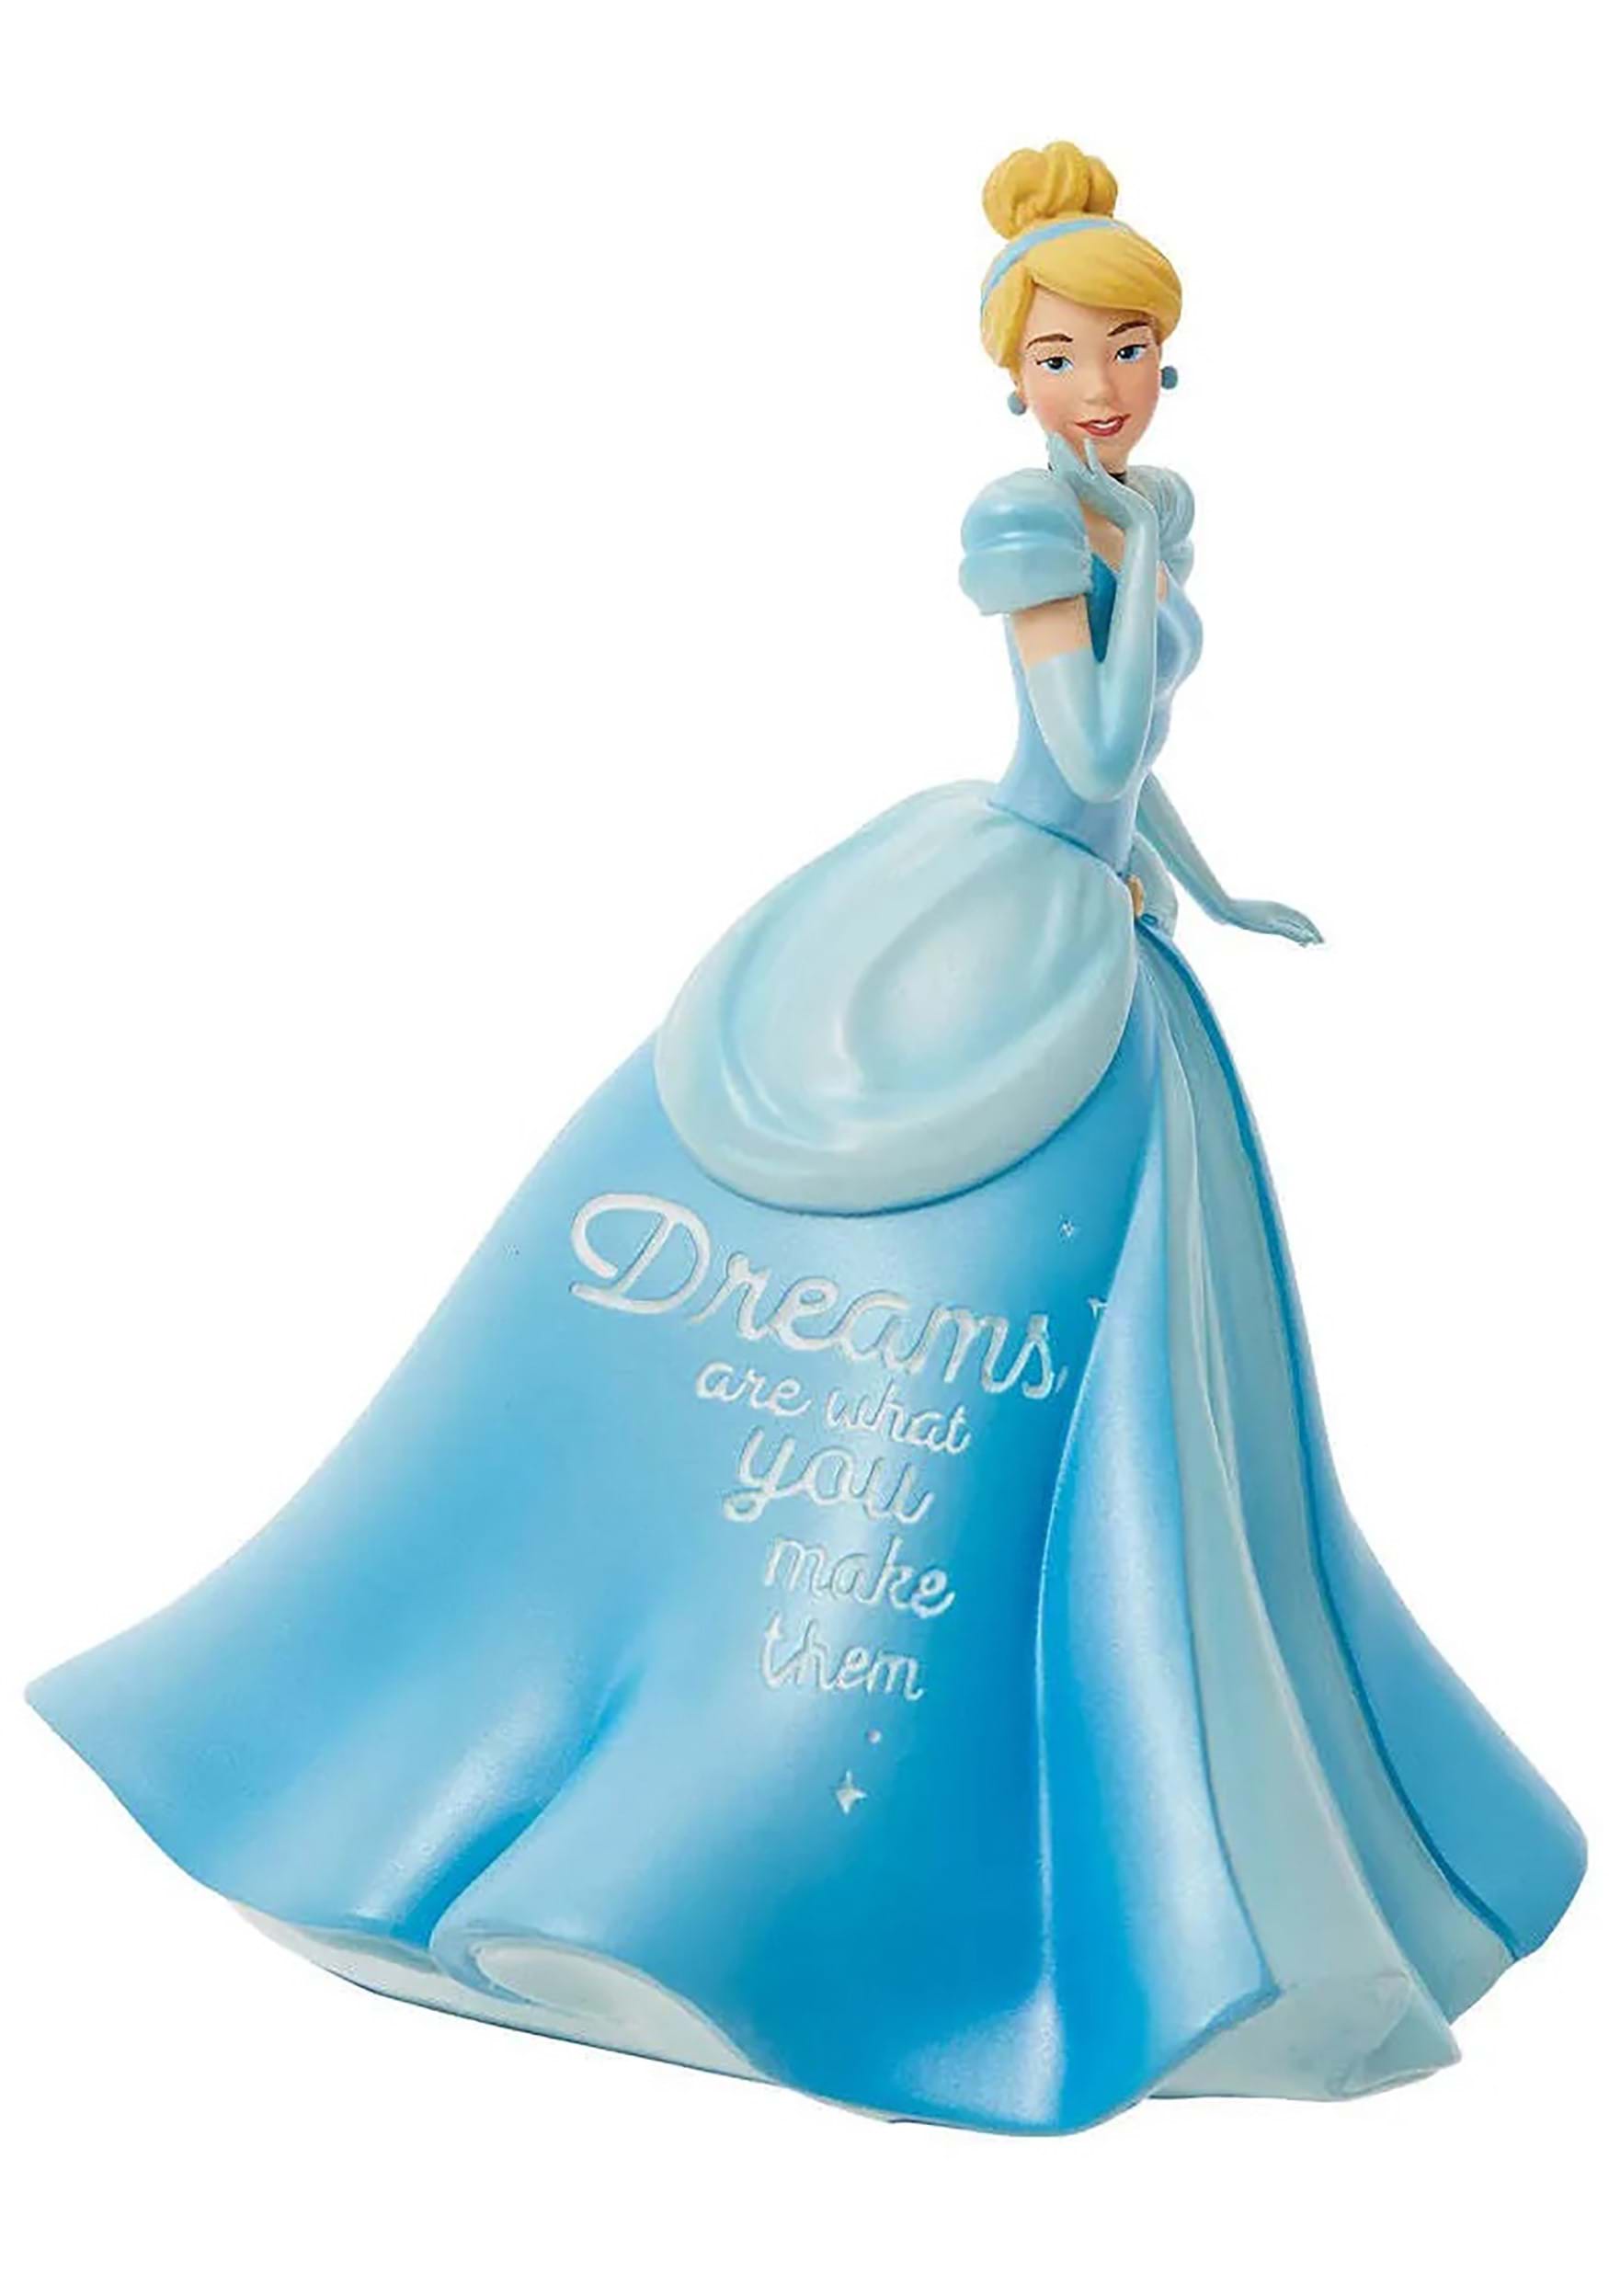 Disney Princess Cinderella Expression